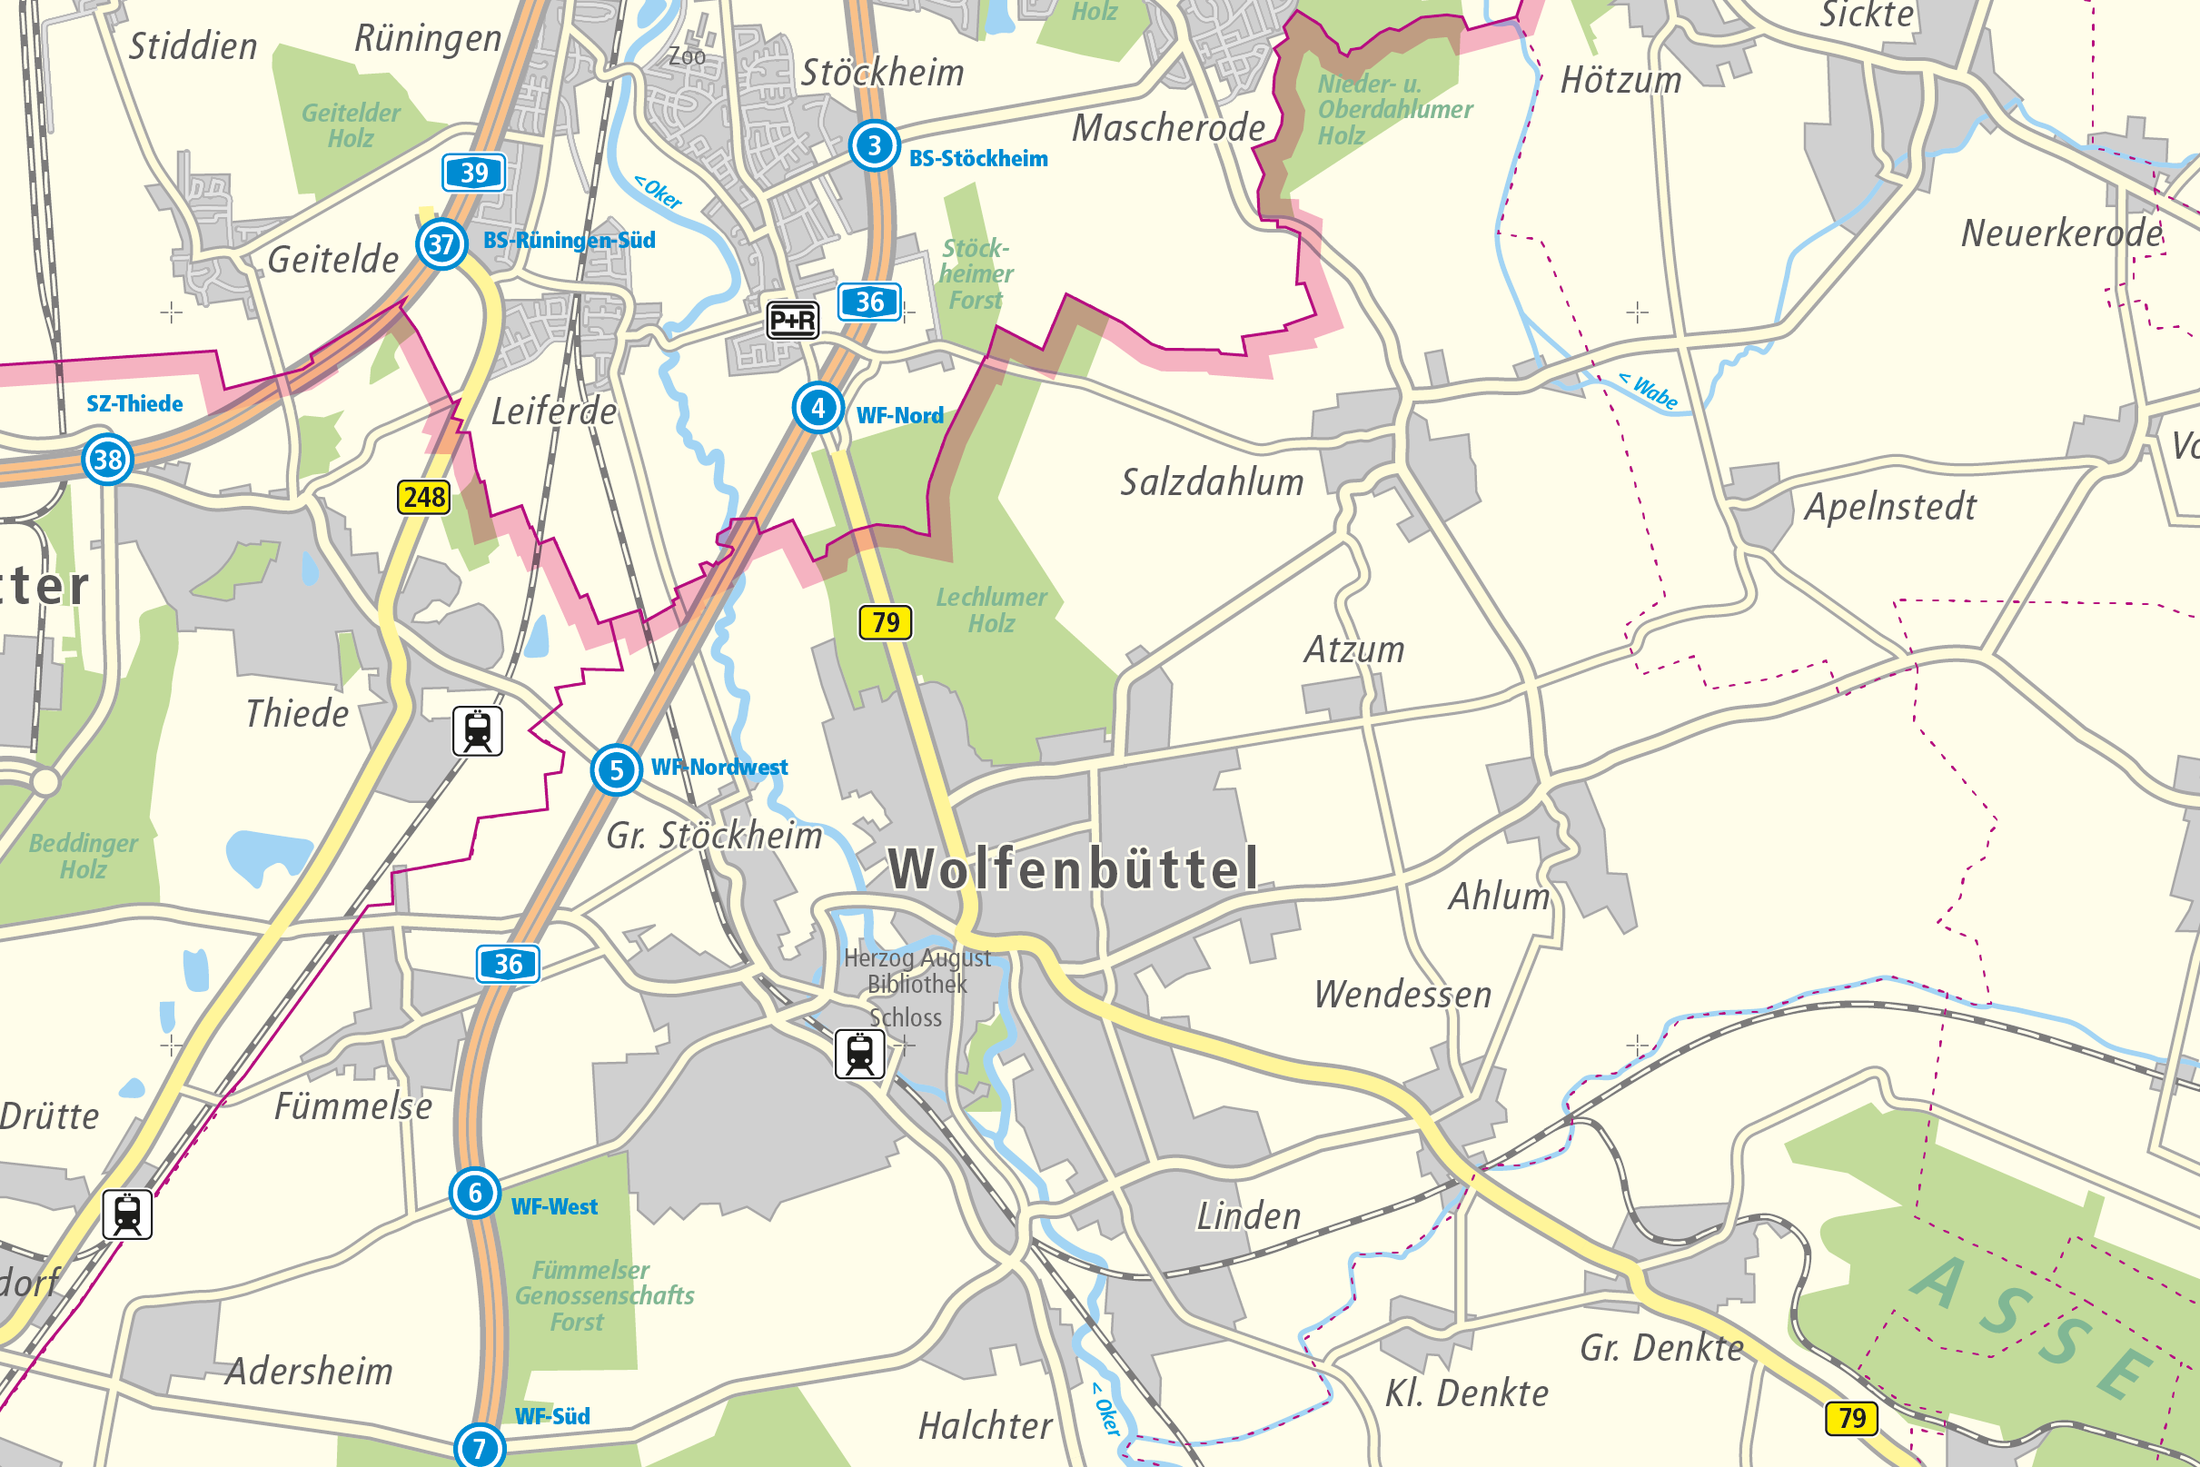 Regionalkarte 1:100.000, Region zwischen Gifhorn und dem Harz